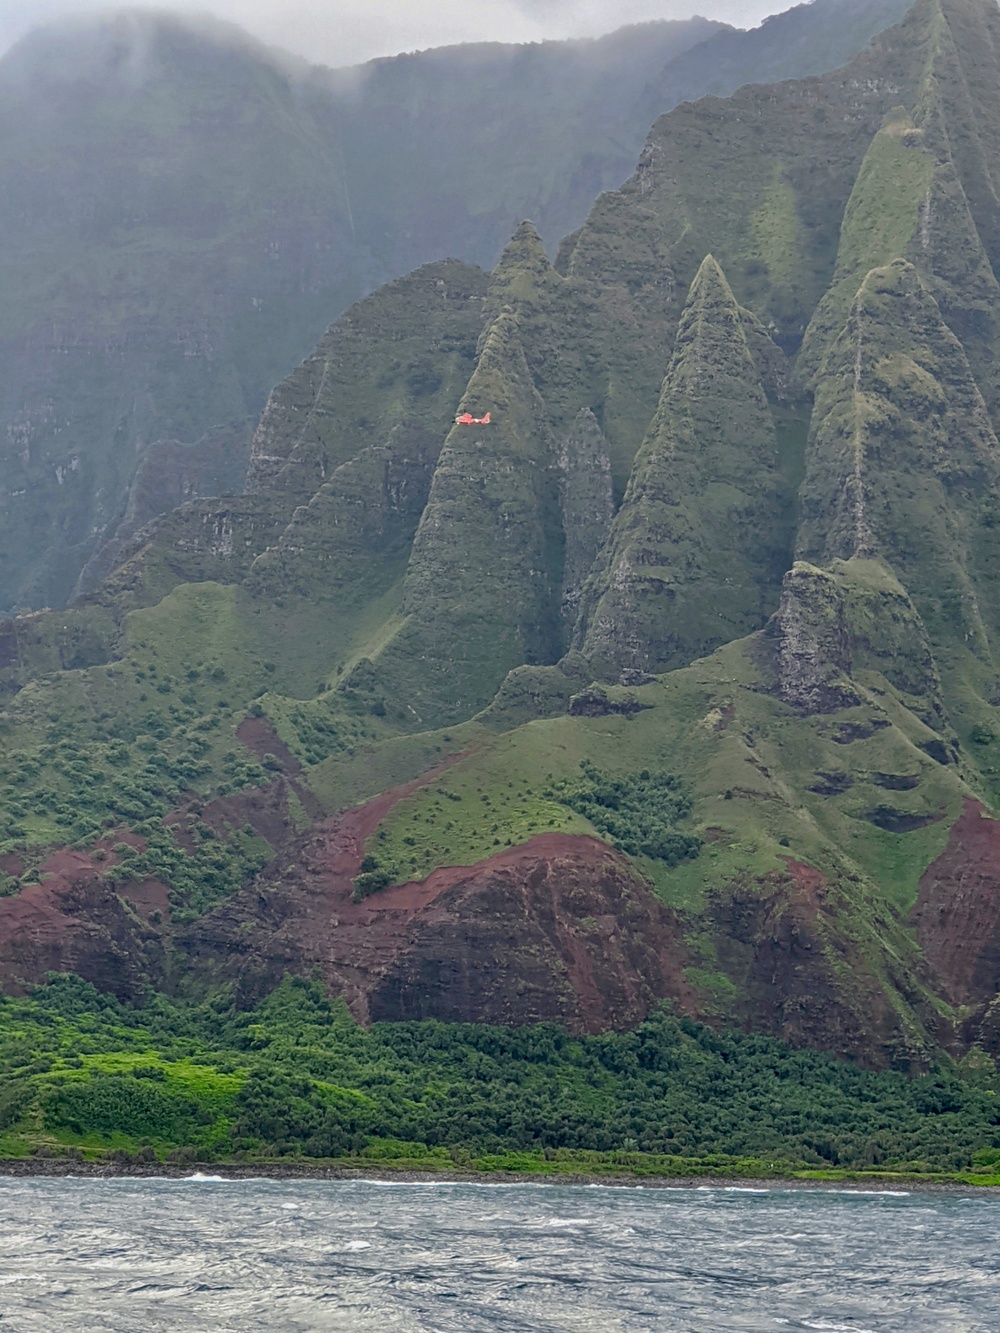 Coast Guard searching for tour helicopter off Kauai's Nā Pali Coast